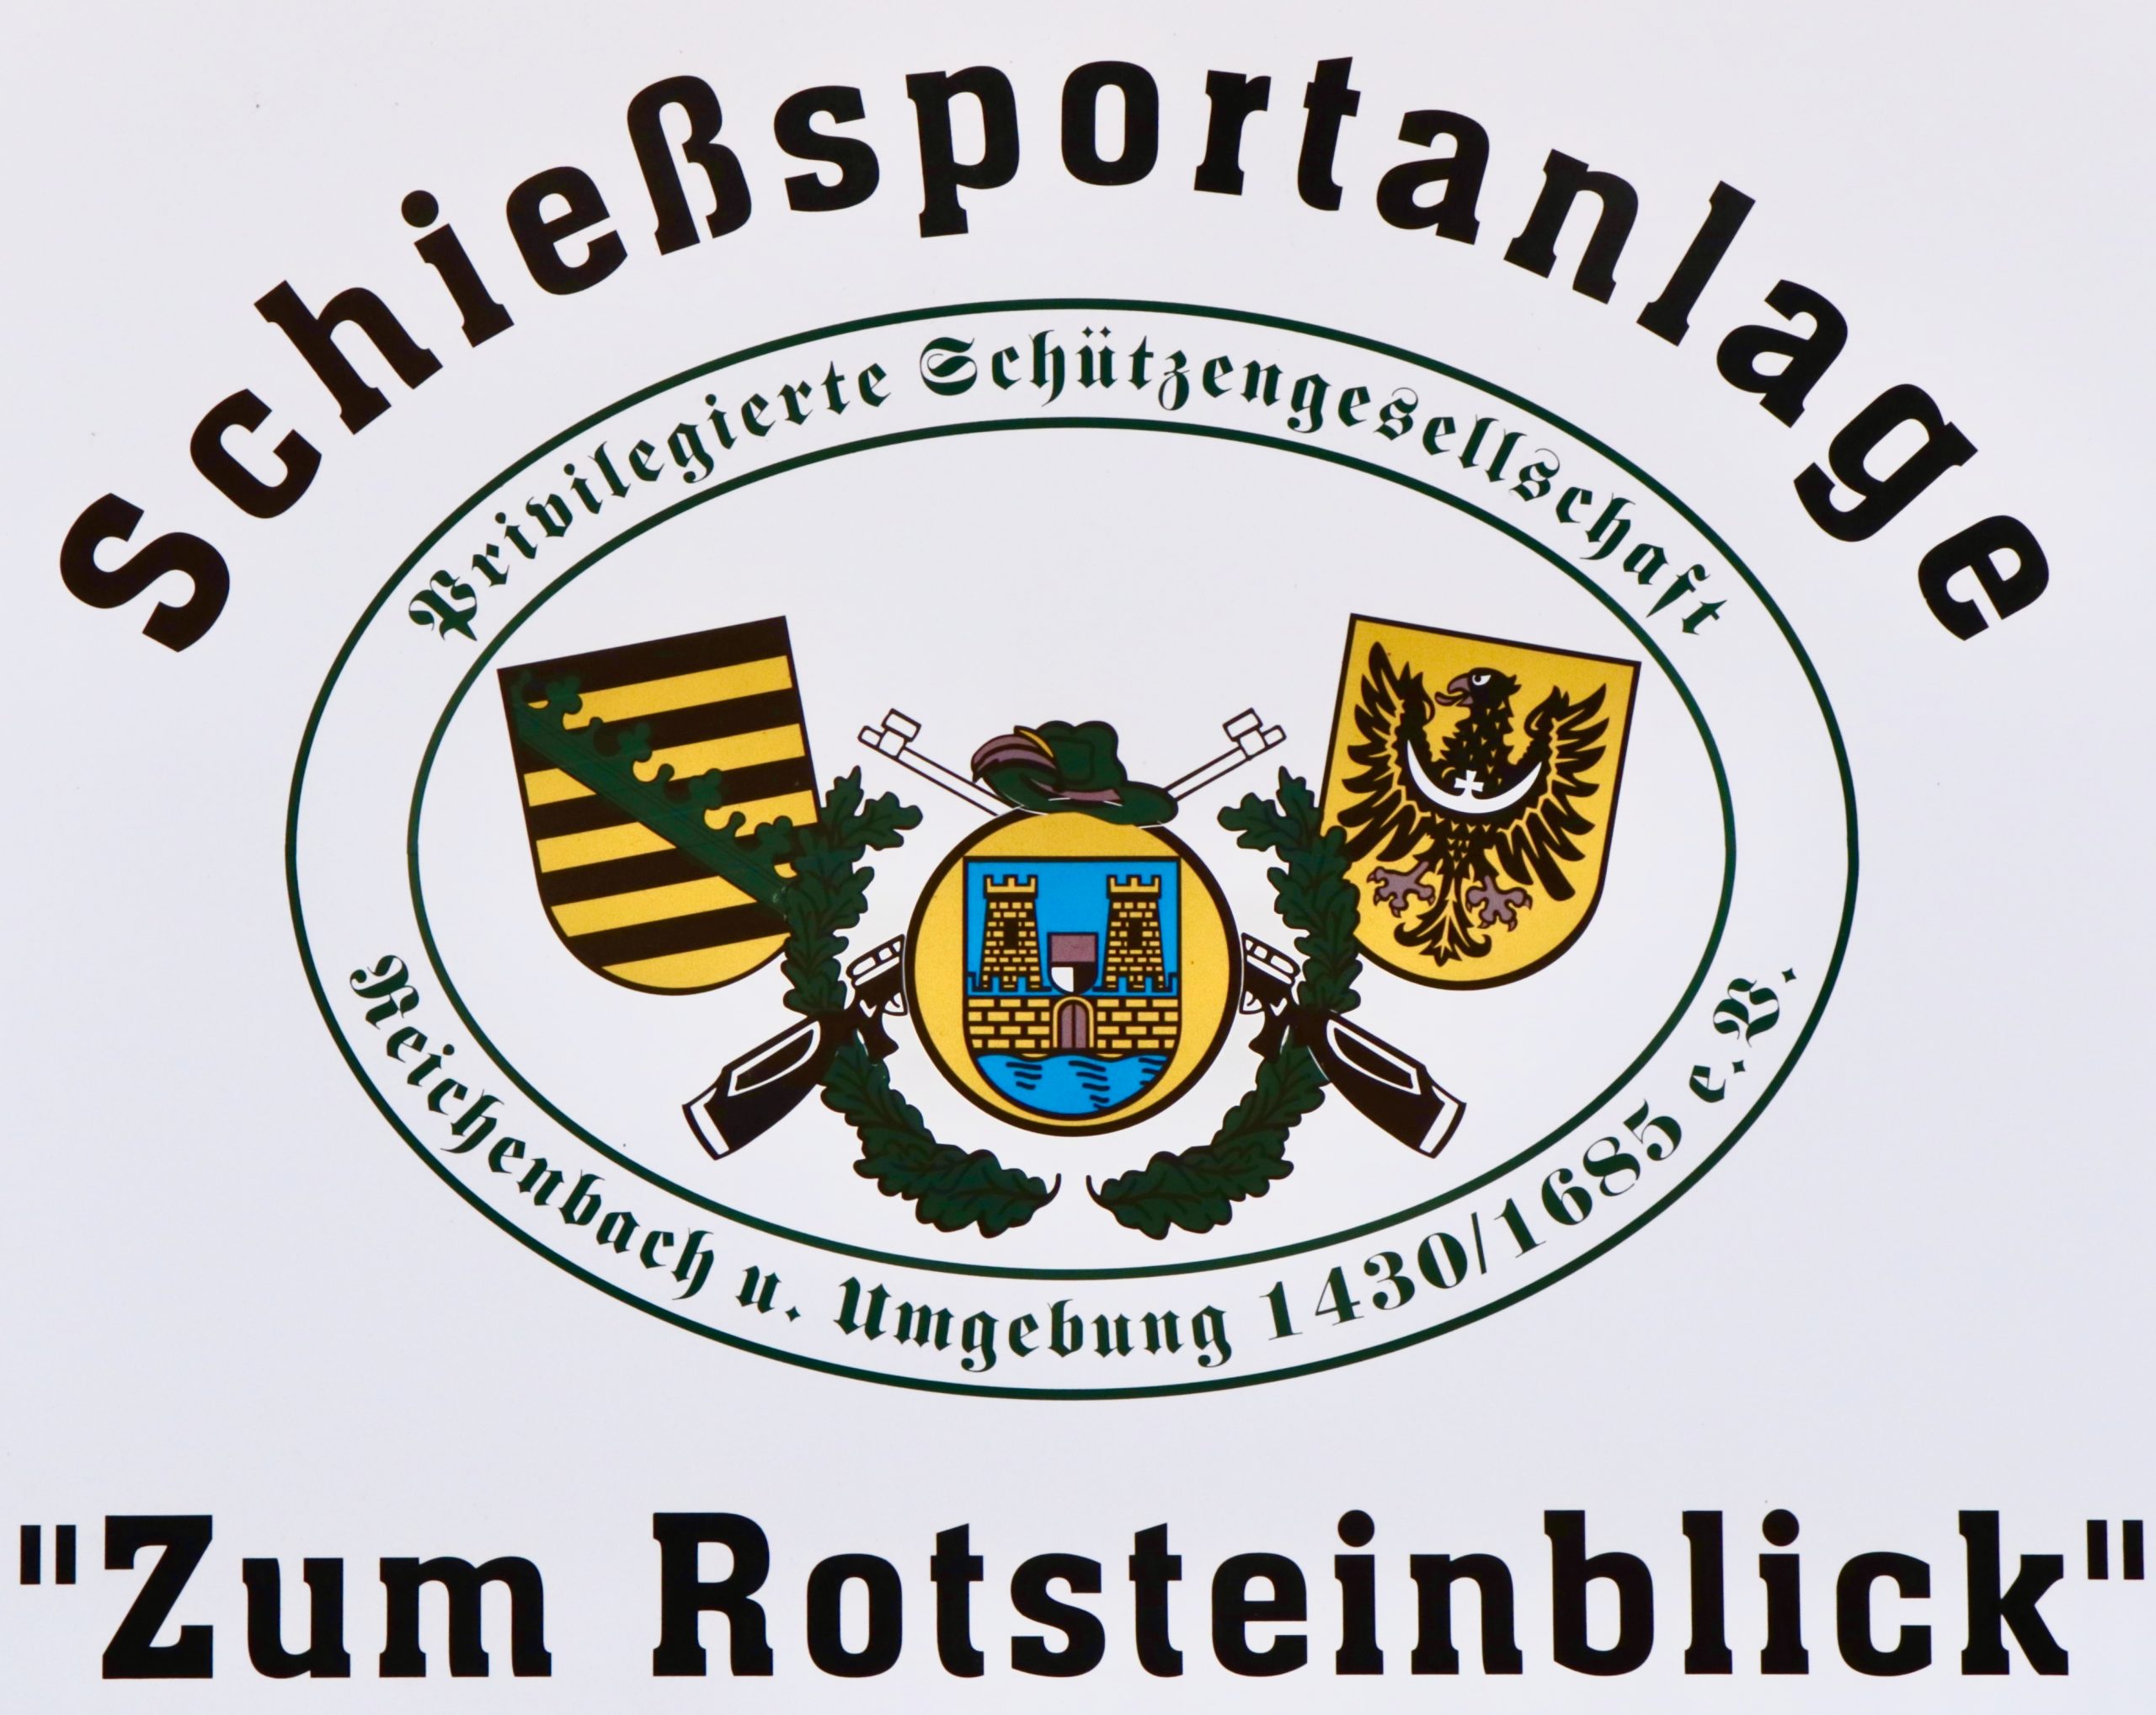 Schild der Schießsportanlage des PSG Reichenbach u. U. 1430/1685 e. V.